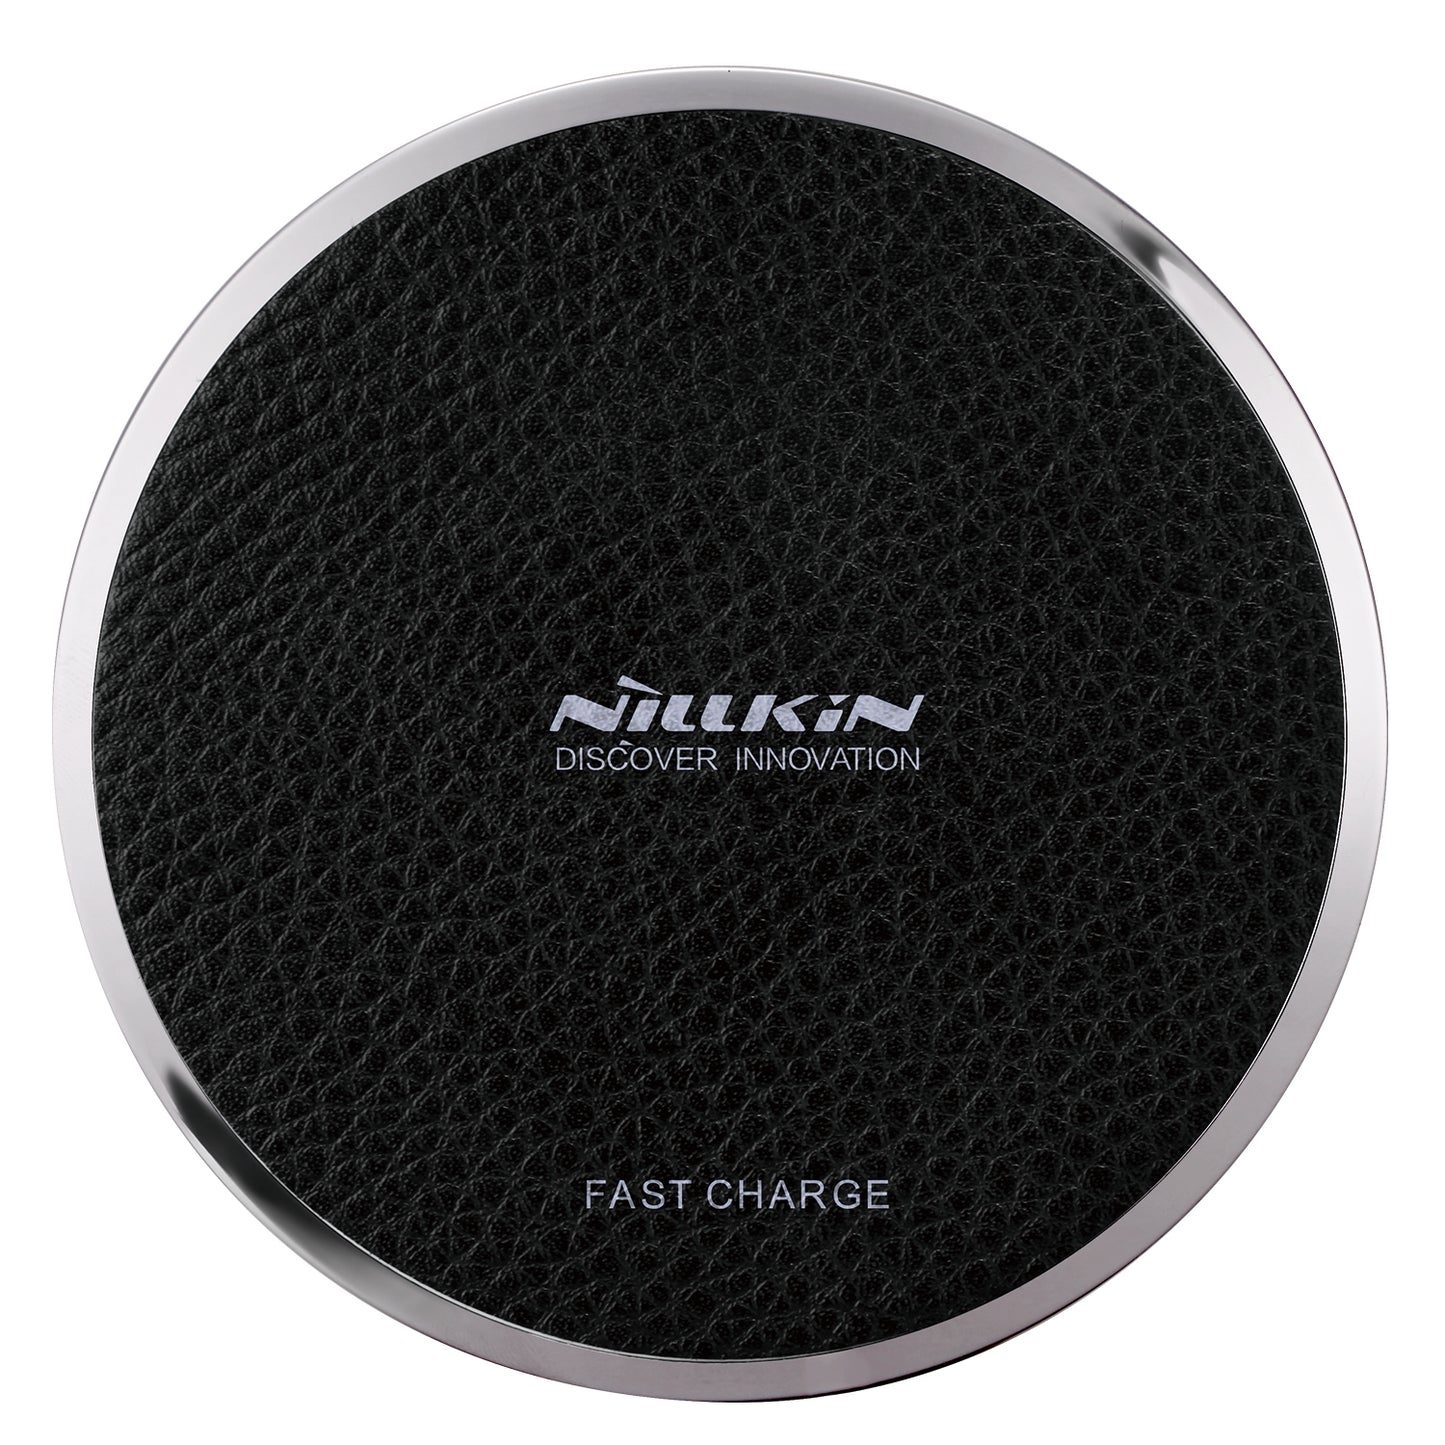 Nillkin 魔碟3代皮革系列(10W快充版)無線充電器